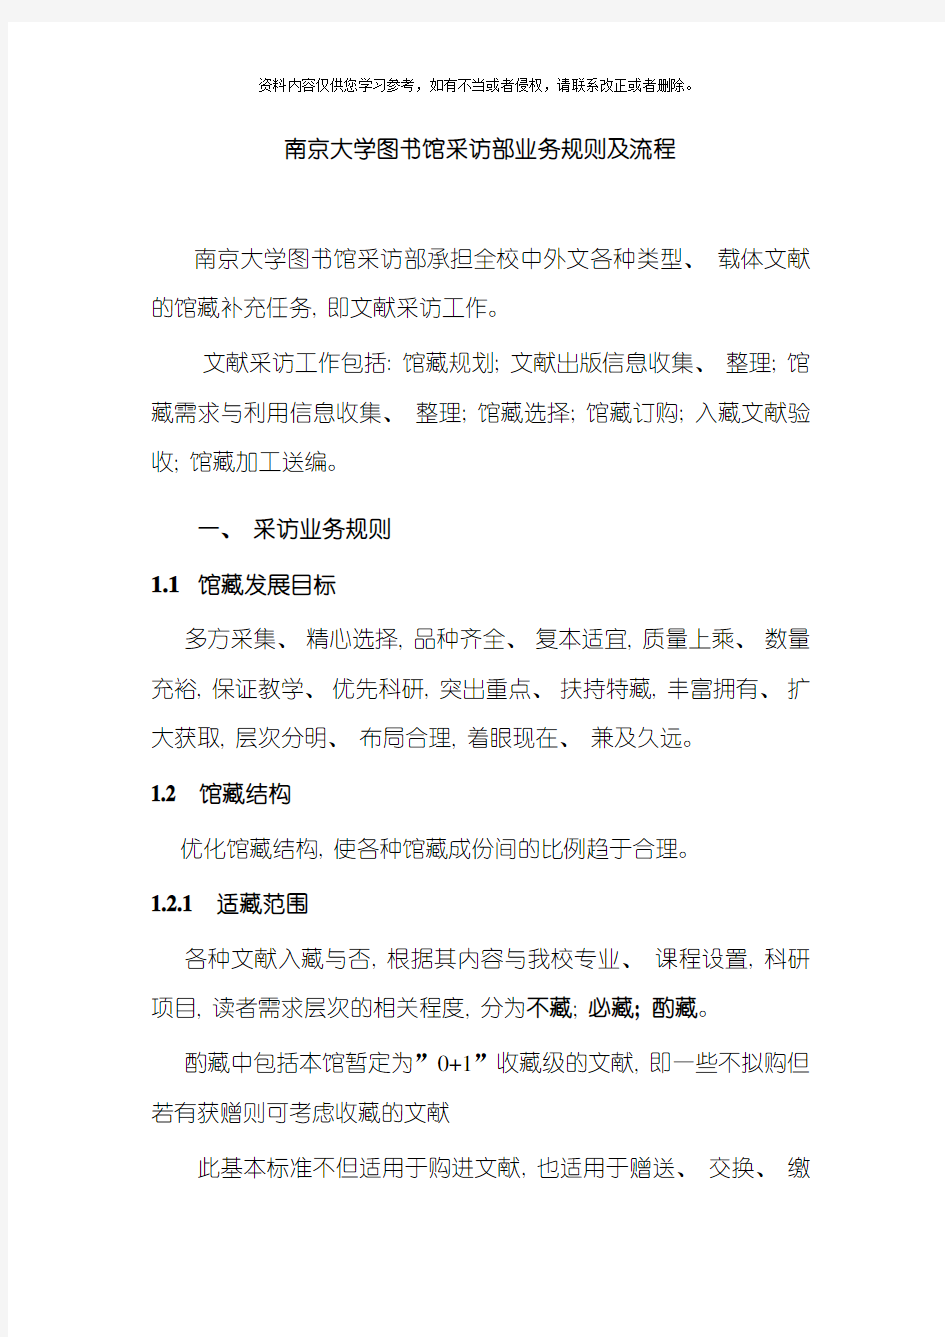 南京大学图书馆采访部业务规则及流程模板